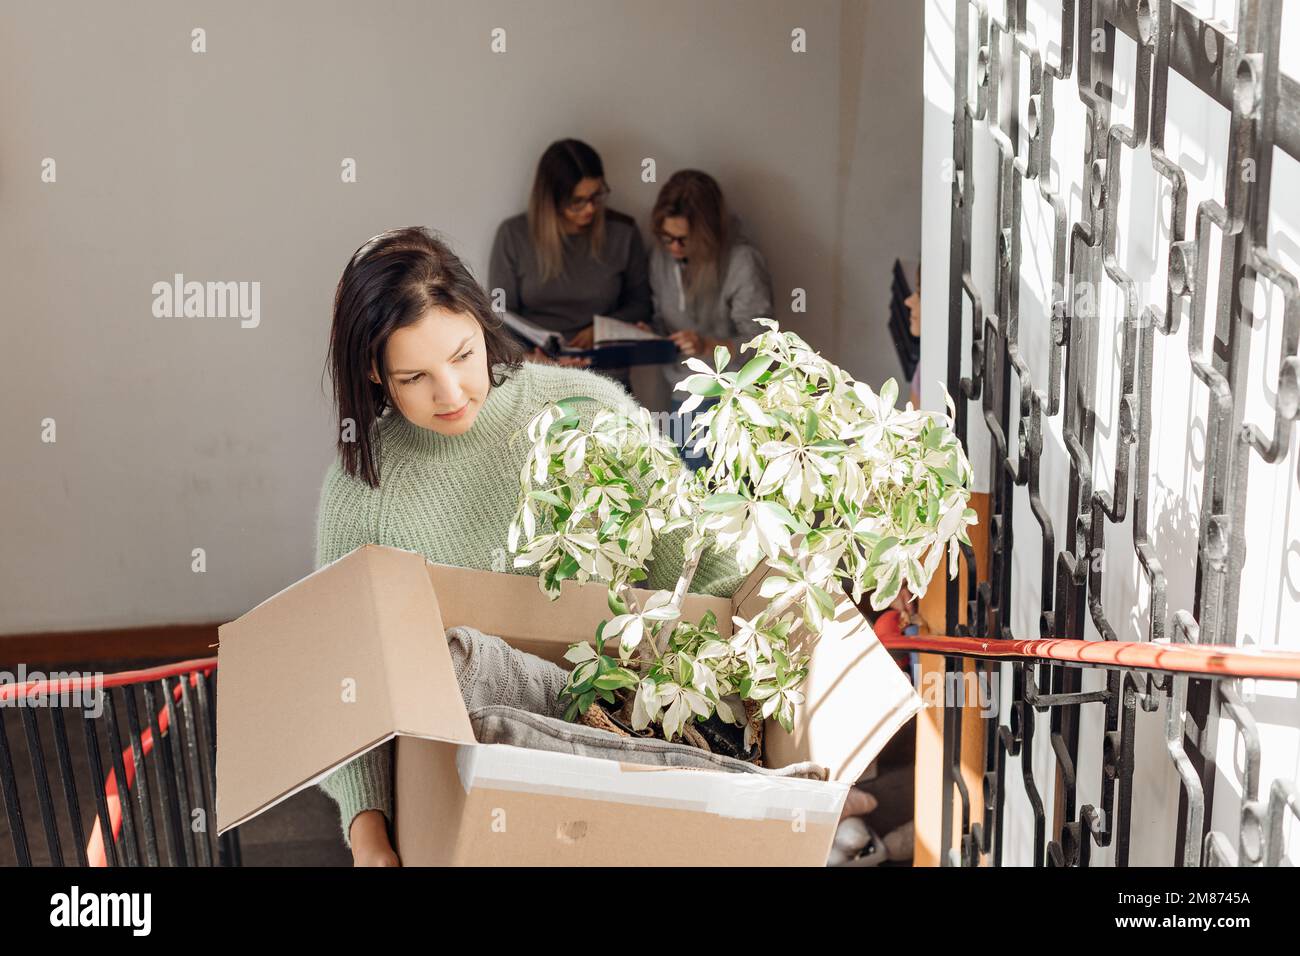 Müde, ernsthafte, vorsichtige Frauen tragen Gepäckkisten mit Pflanzen auf Treppen, überprüfen die Liste der Dinge während des Umzugs Stockfoto